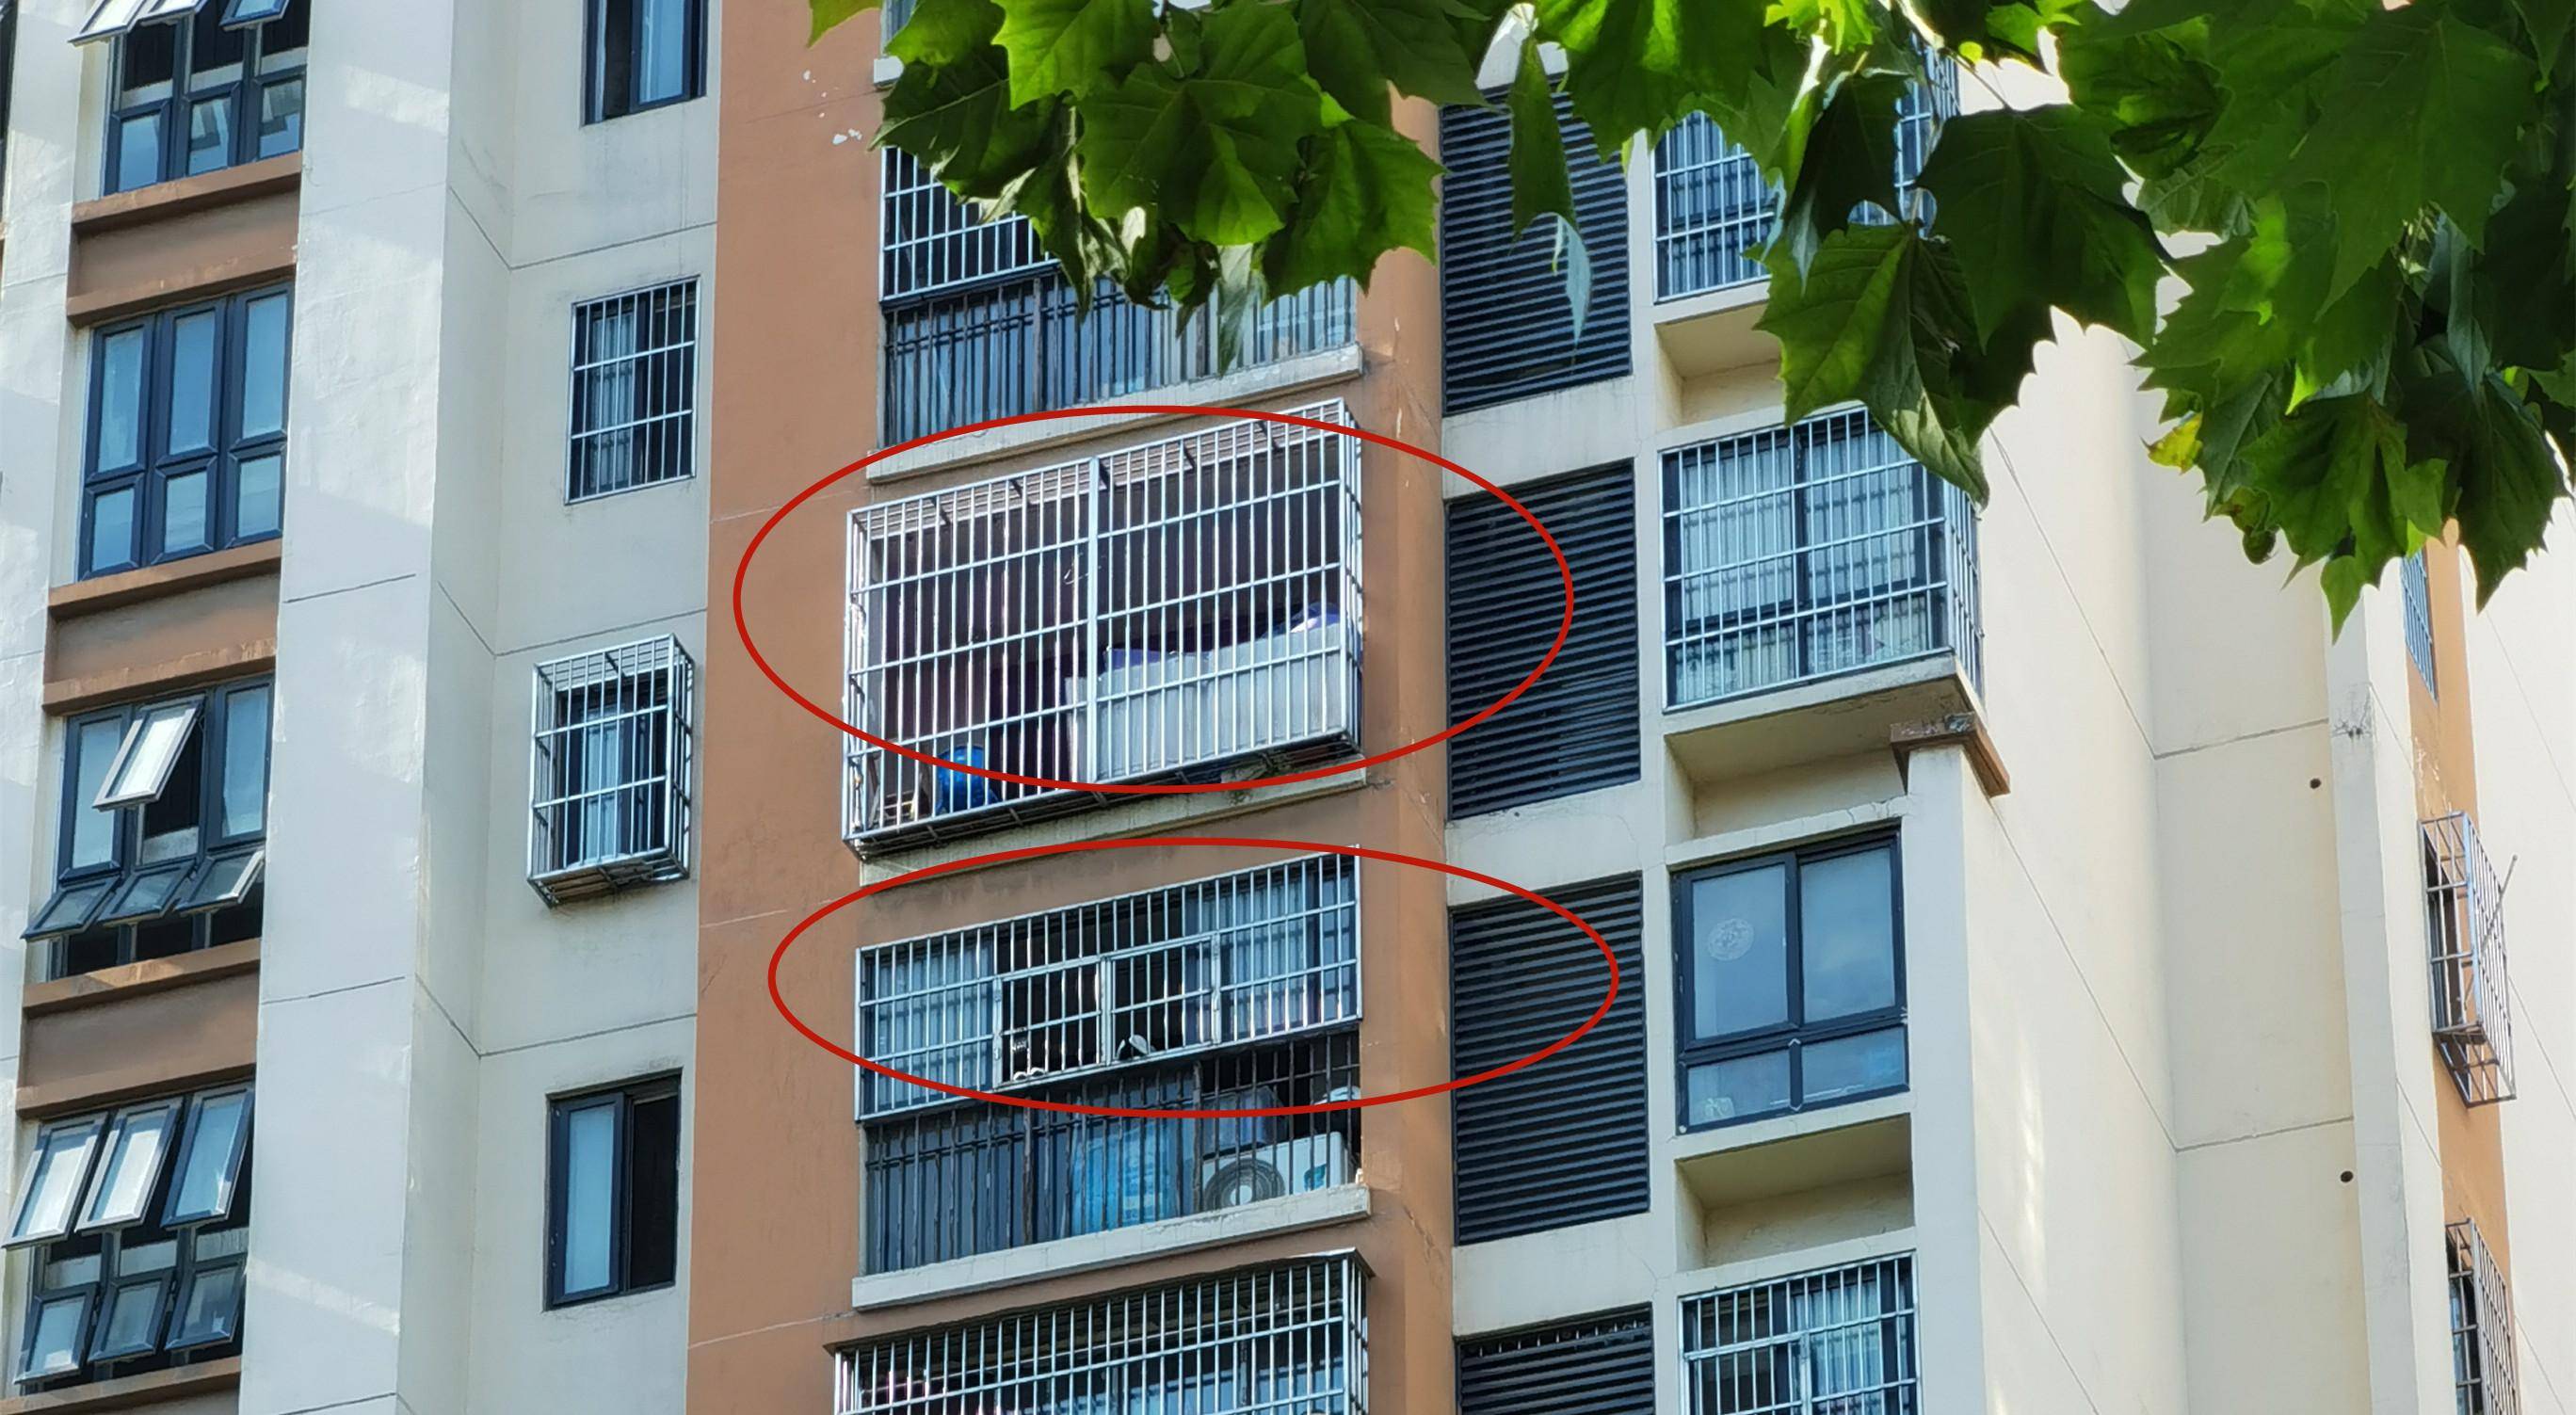 而防盗窗封一半其实就是保留阳台底部护栏,在护栏上方安装防盗窗,主要